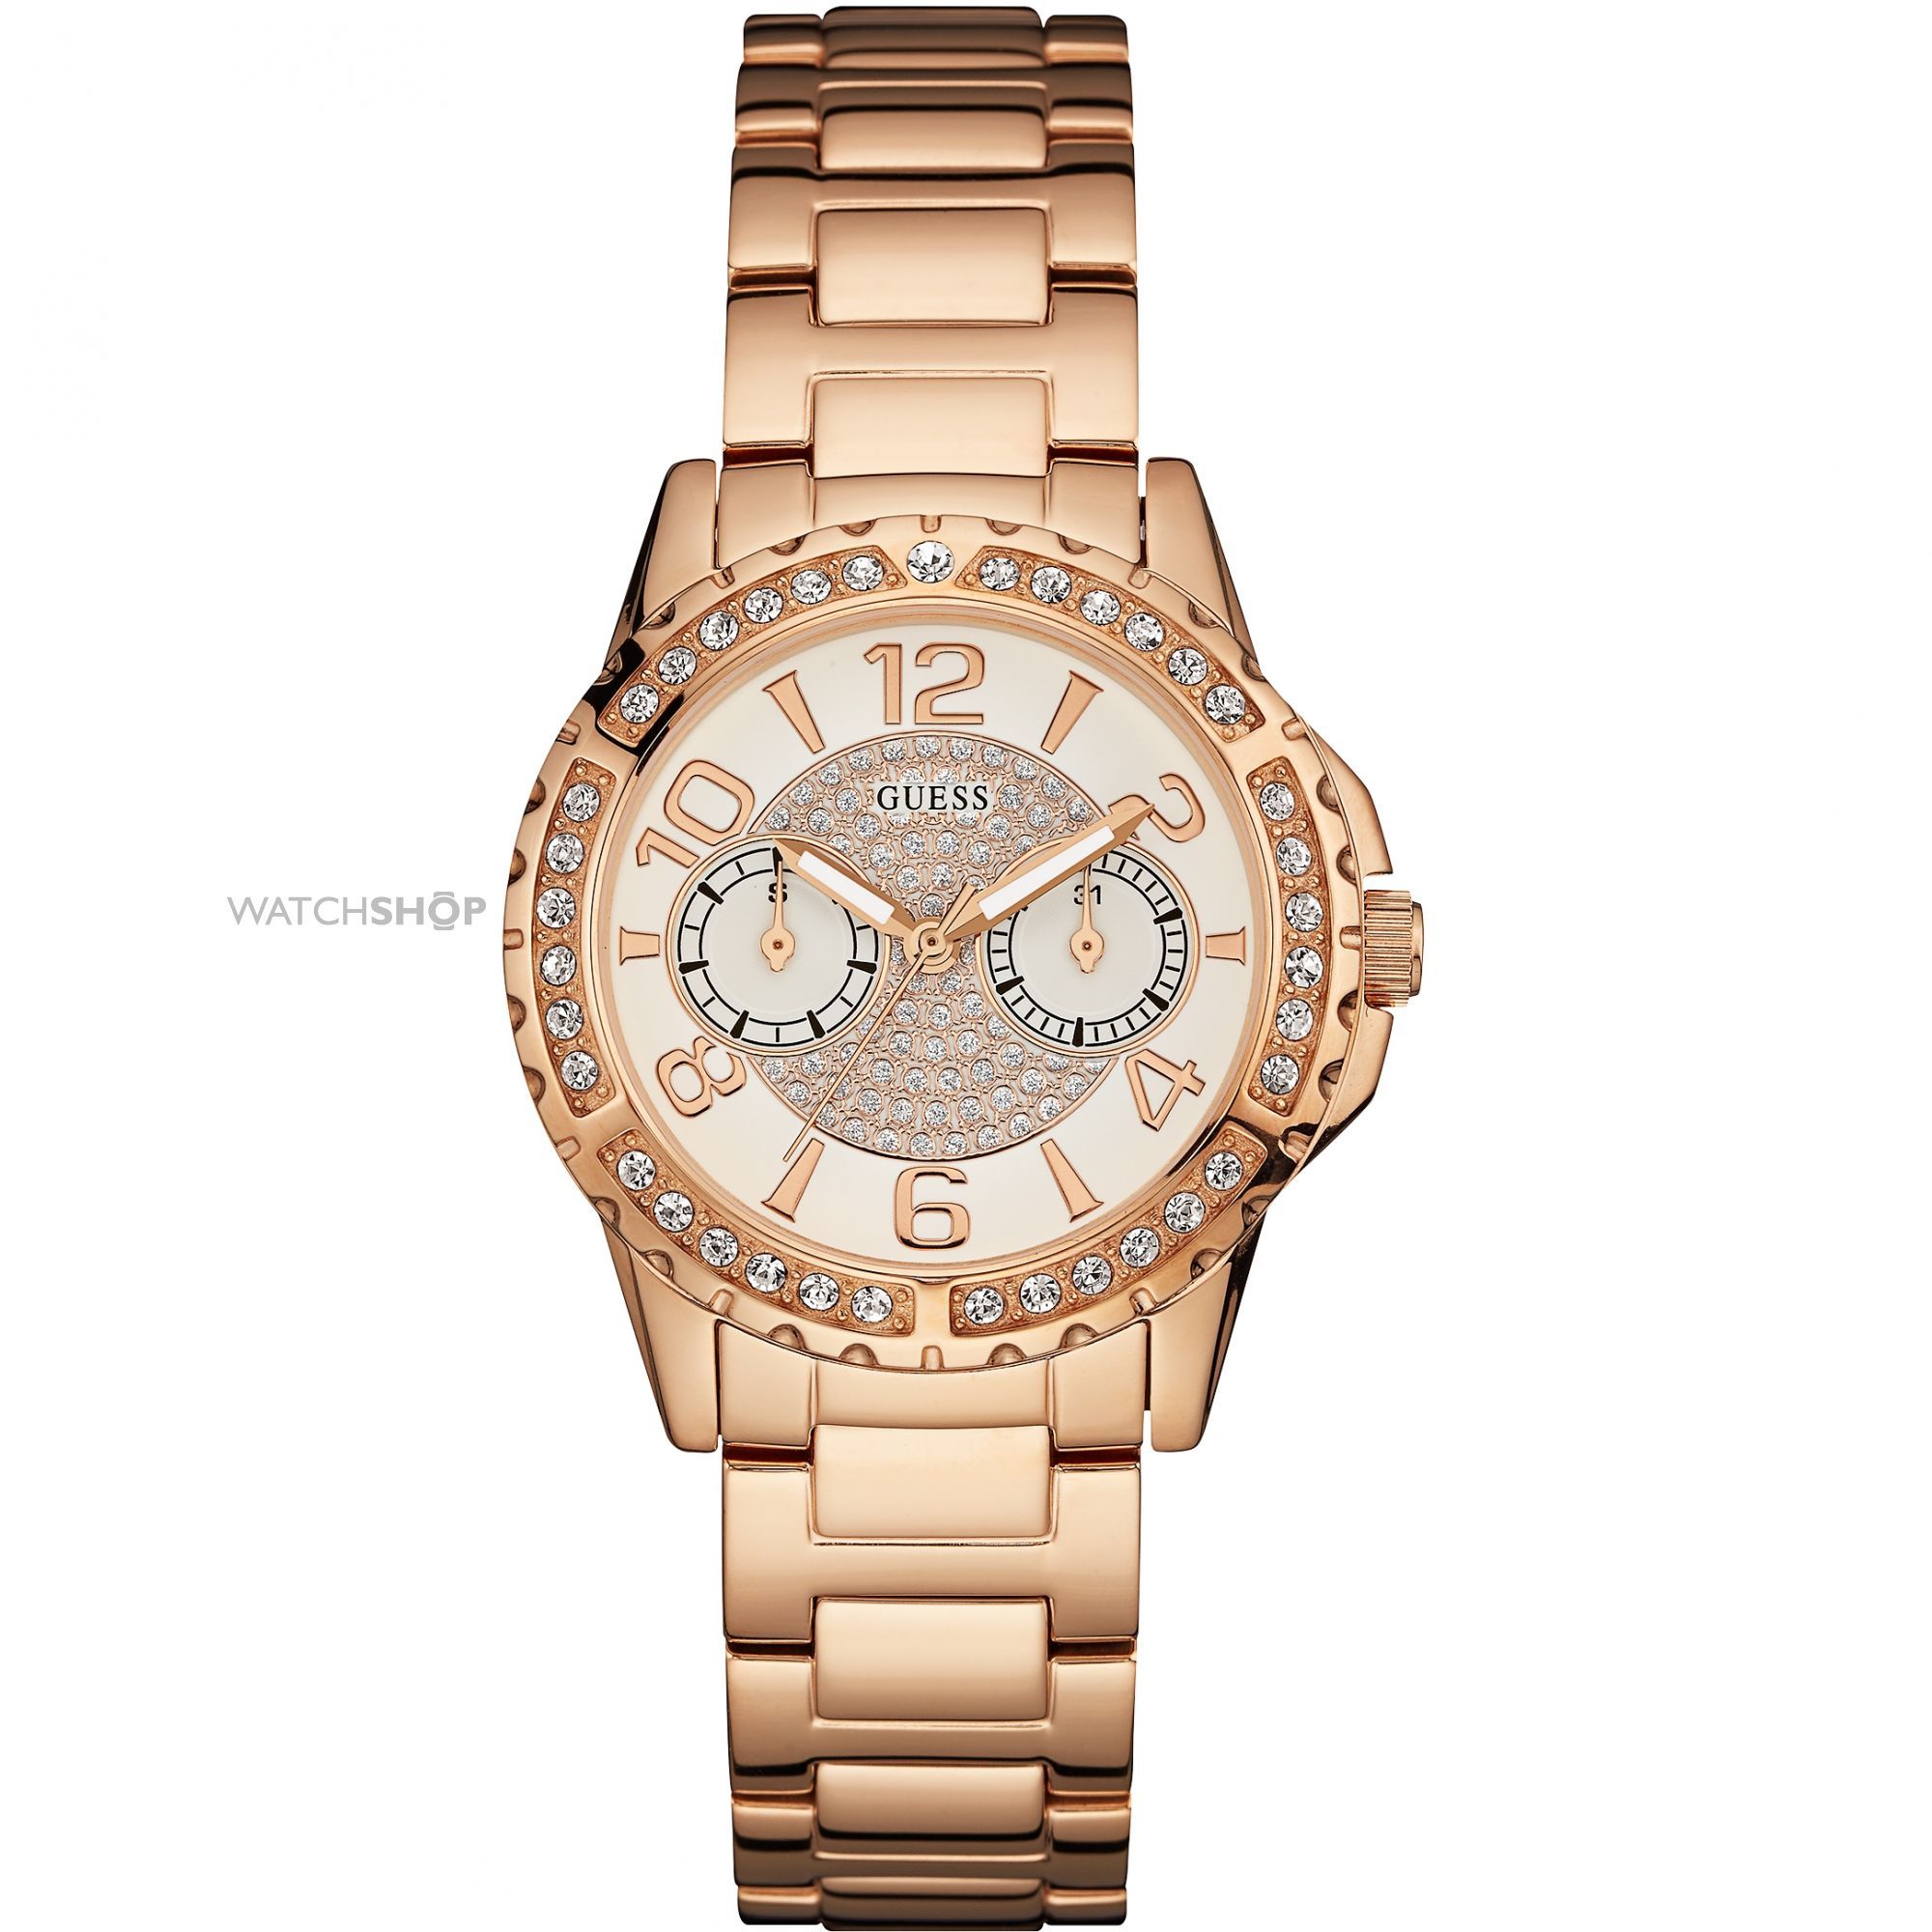  GUESS W0705L3 - женские наручные часы